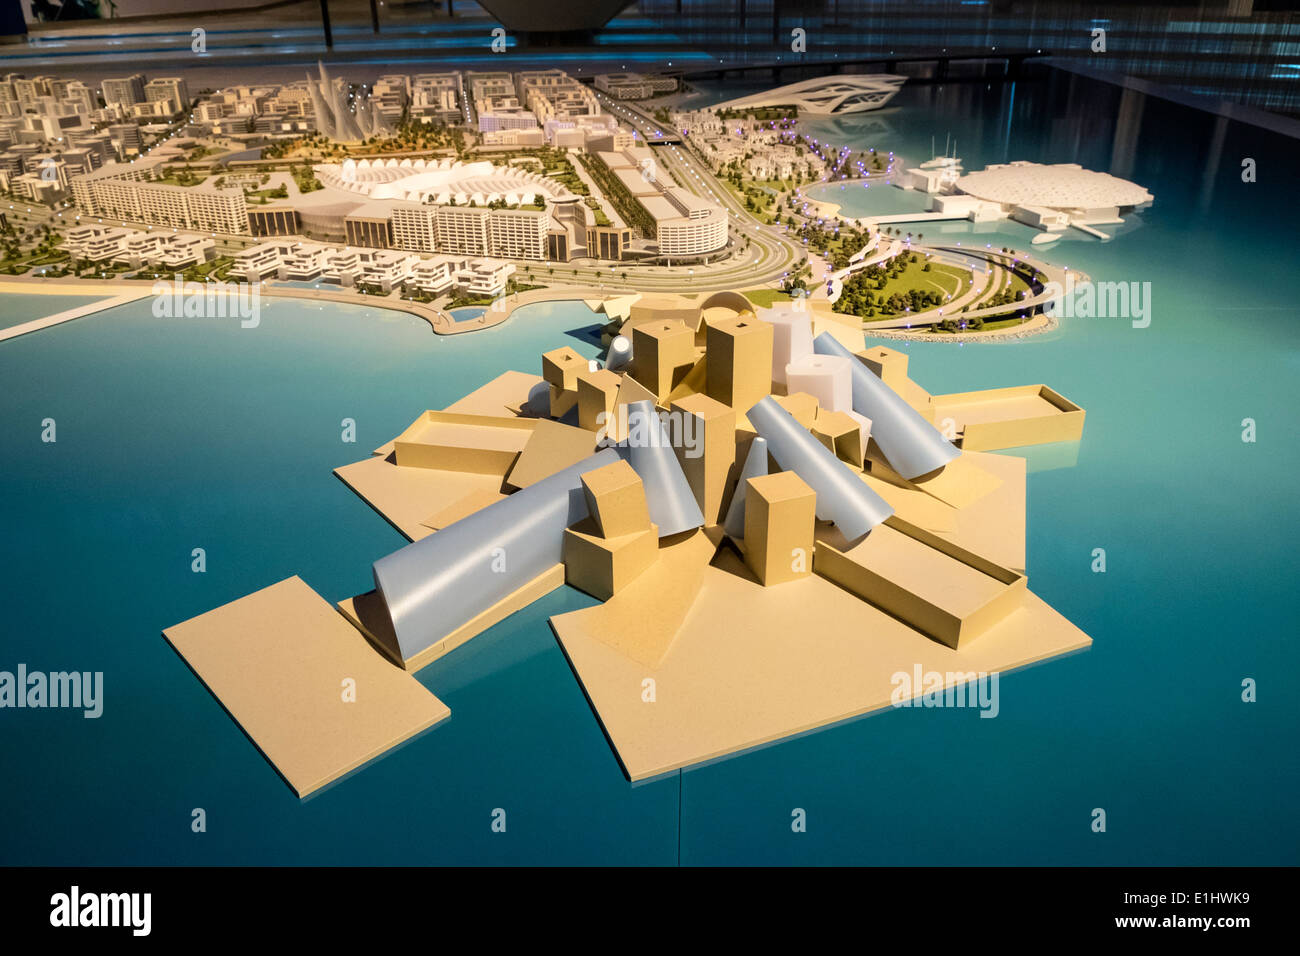 Ansicht des Masterplans mit neuen Museen (Guggenheim im Vordergrund) für Saadiyat Island in Abu Dhabi Vereinigte Arabische Emirate Stockfoto